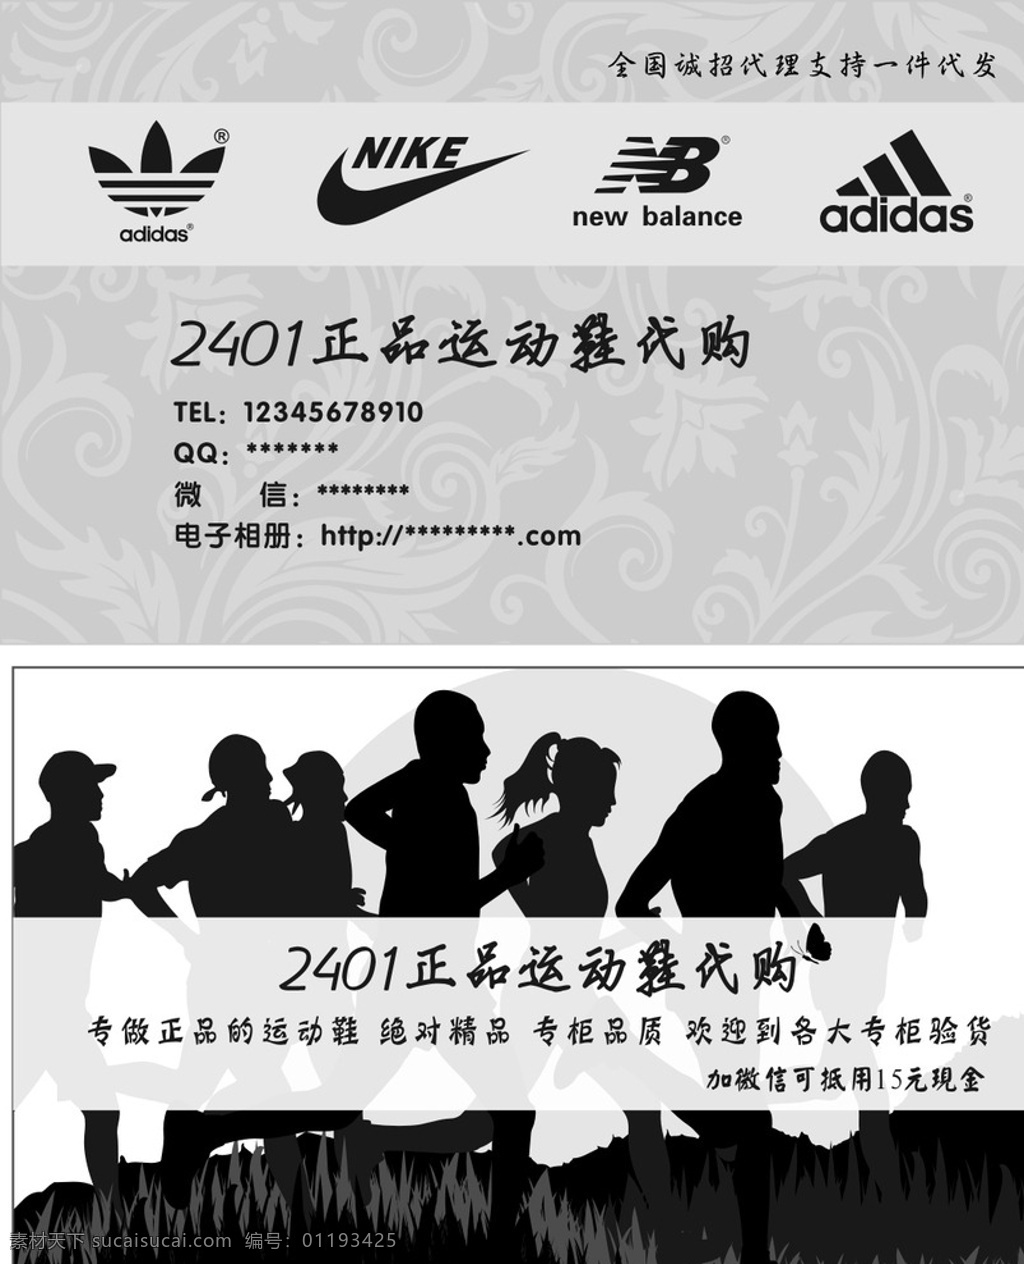 代购名片 运动鞋代购 运动logo adodas nb nike 三叶草 跑步 运动鞋 名片卡片